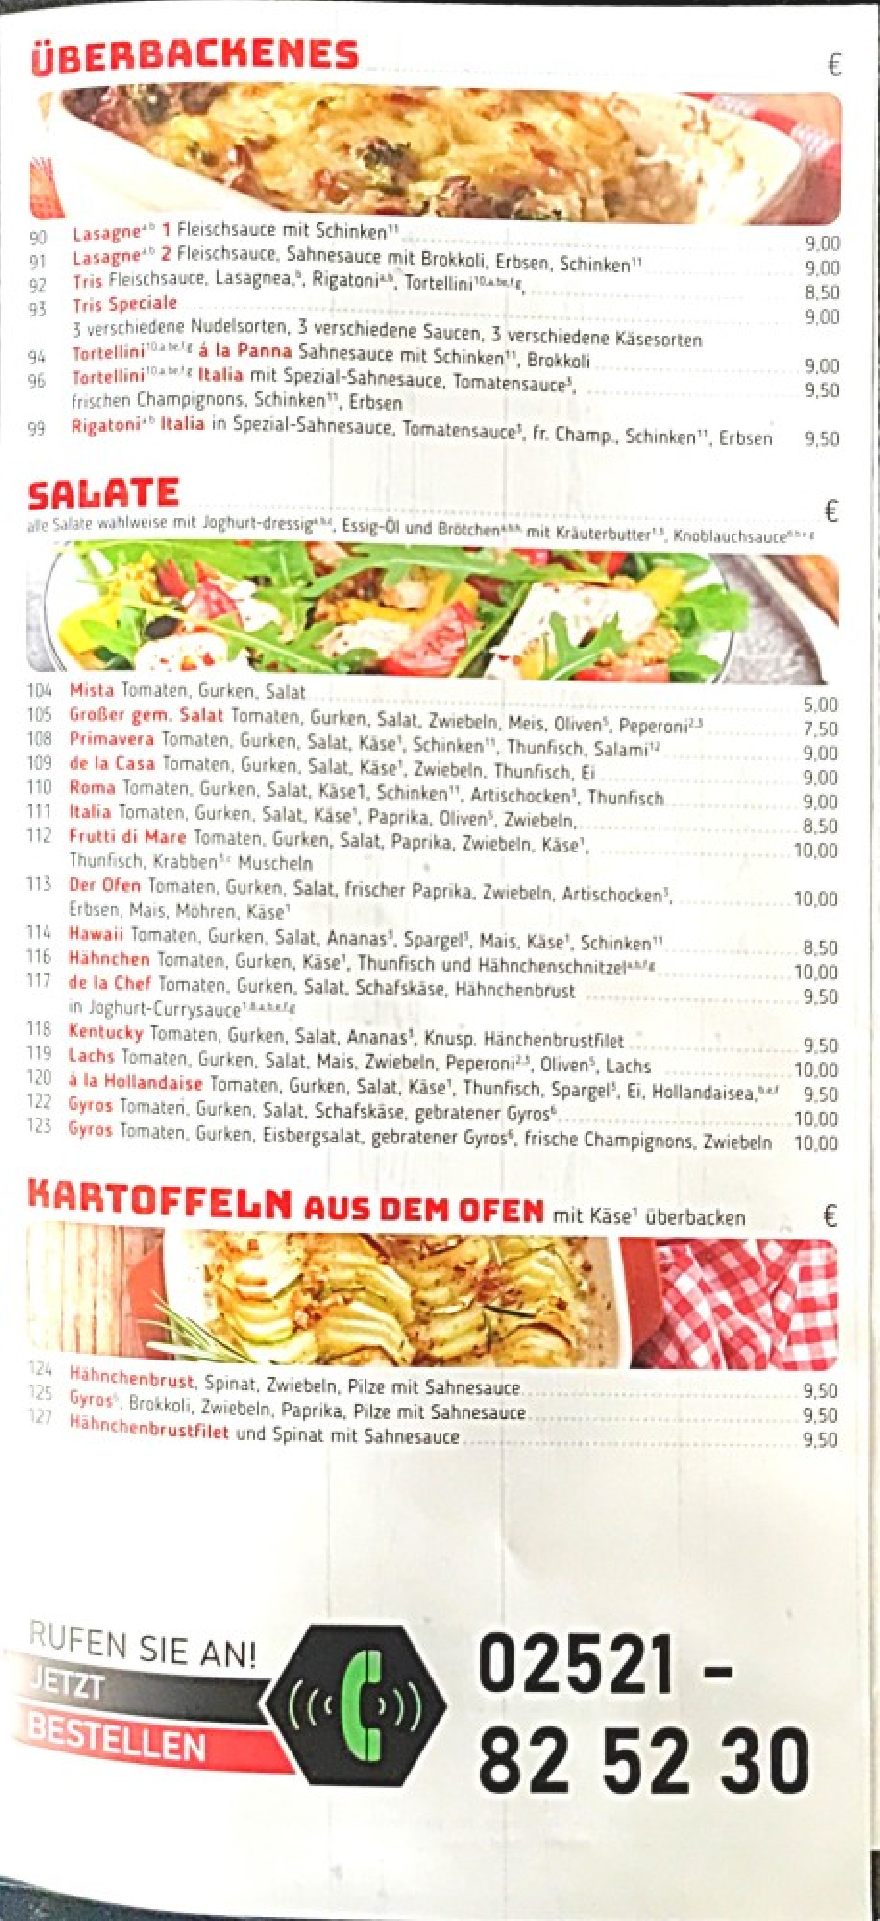 Pizzeria Der Ofen in Beckum. Menu / Flyer page 3